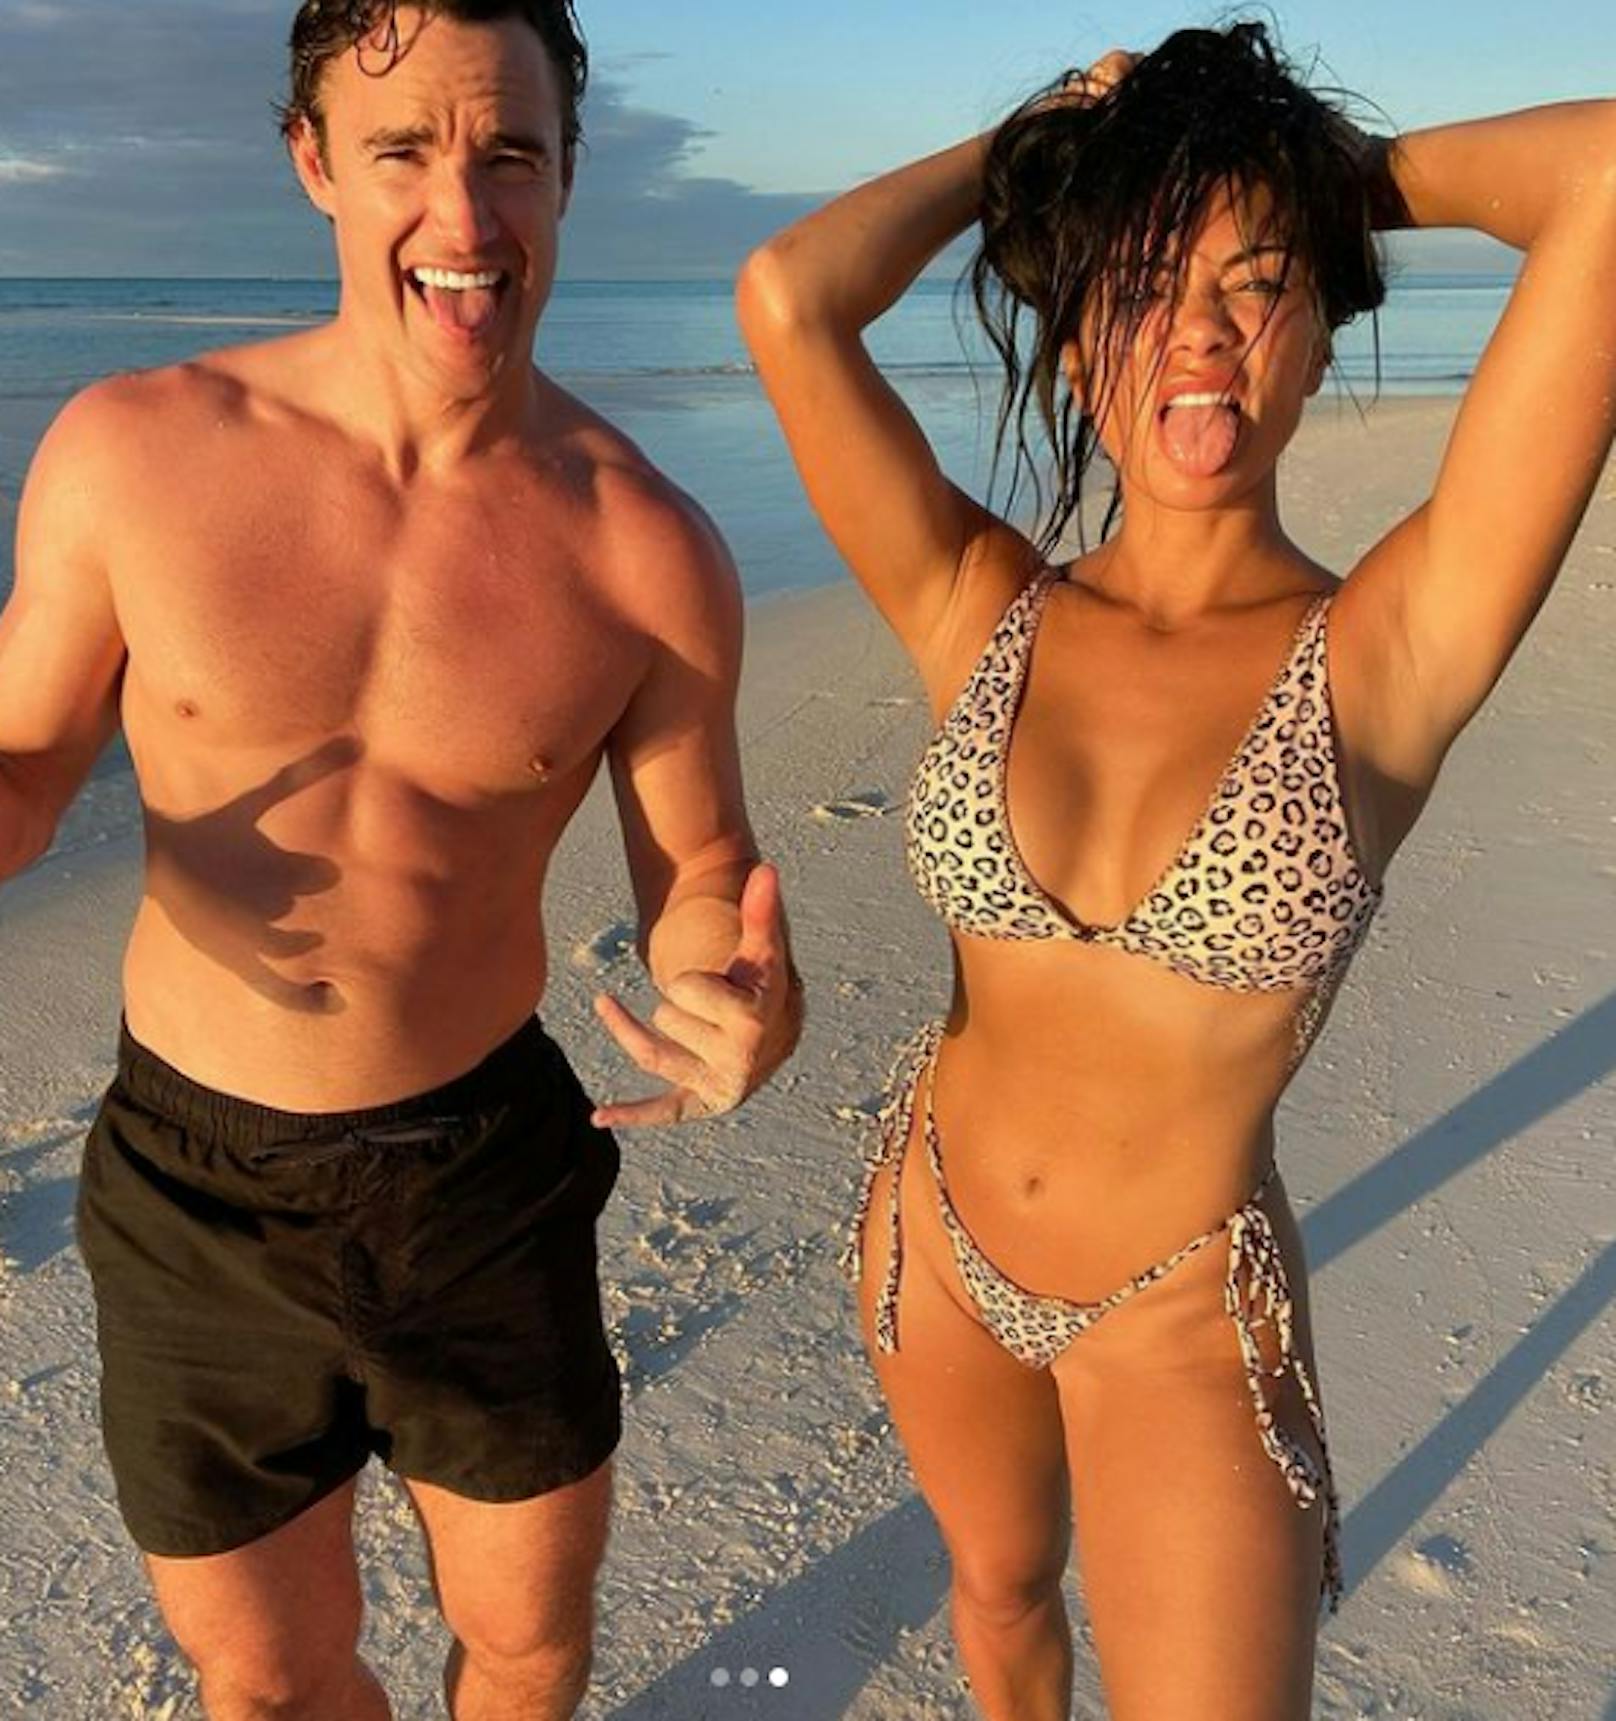 Sängerin Nicole Scherzinger und der Rugby-Star Thom Evans lernten sich 2021 bei der Casting-Show "X-Factor" kennen, nun jetten sie um die Welt und blödeln auf Instagram.